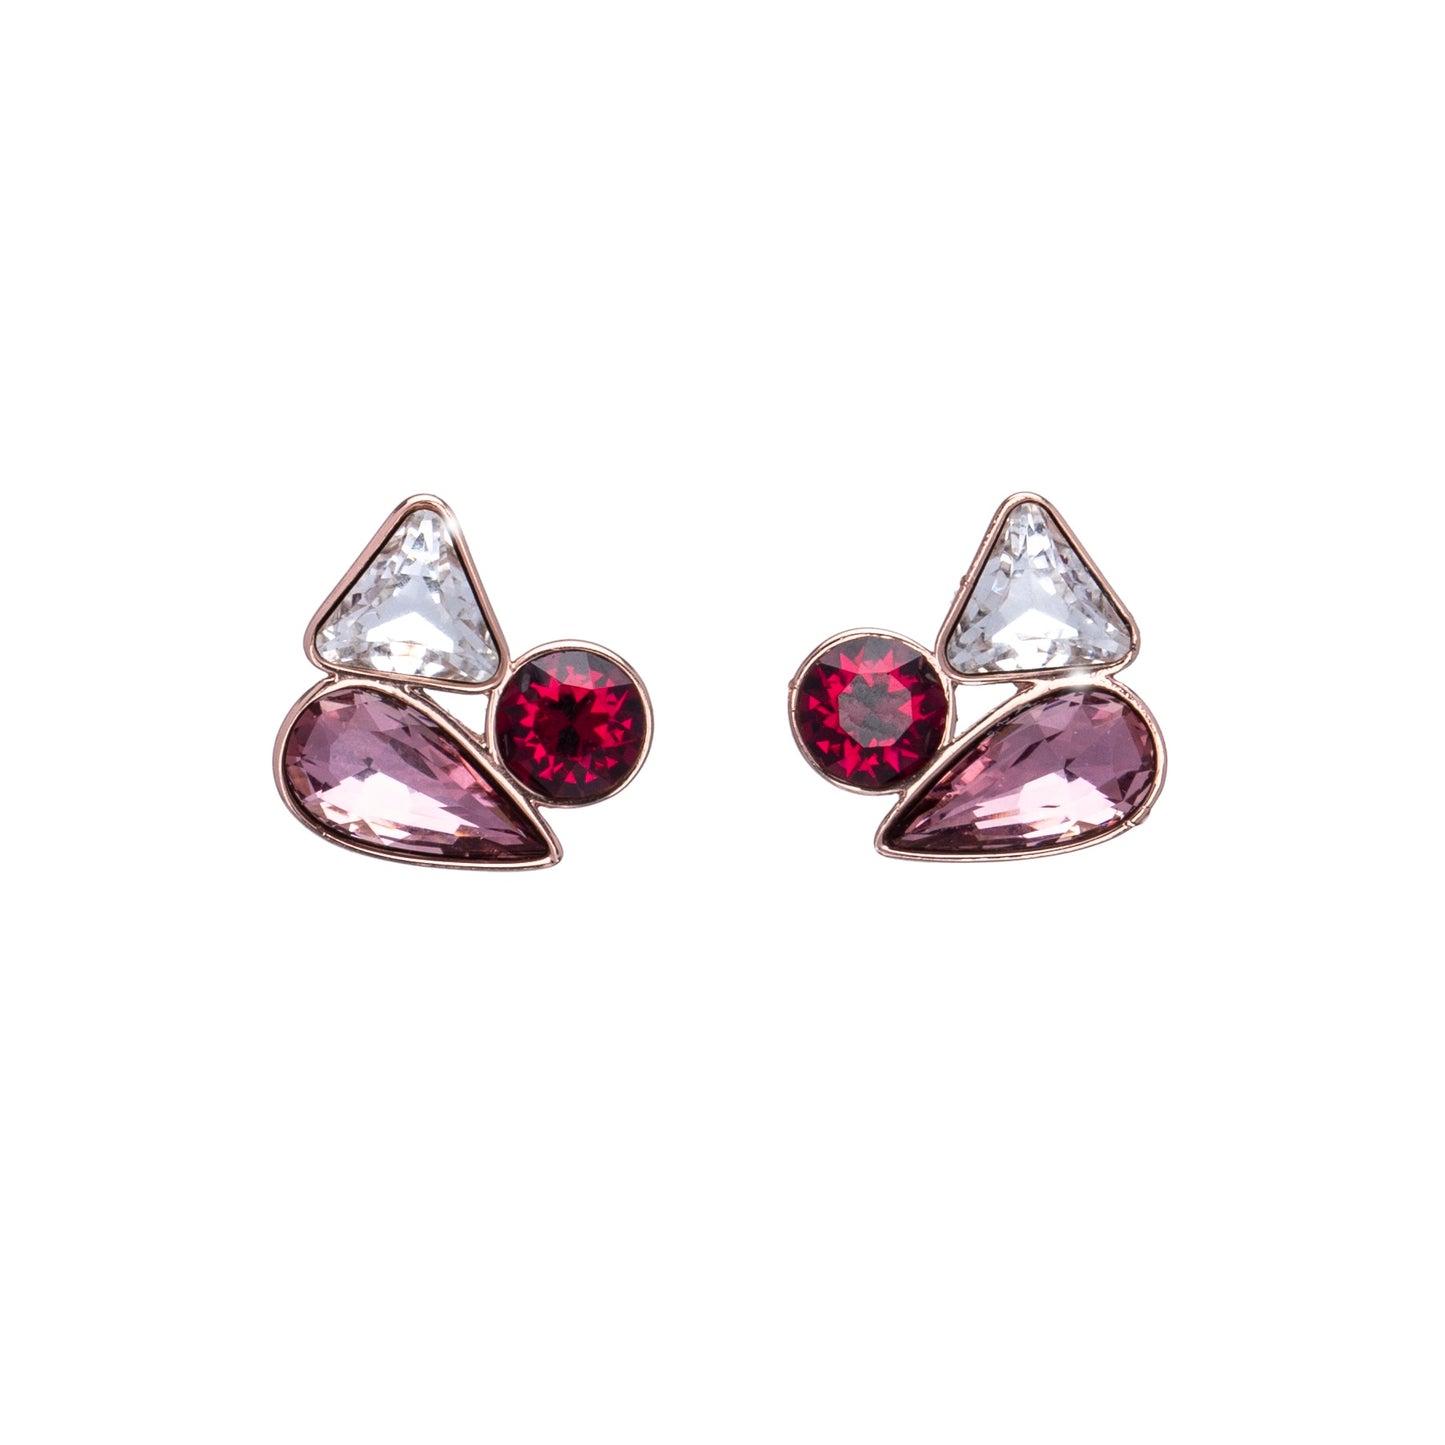 Pink Clear Swarovski Crystal Clustered Stud Earrings